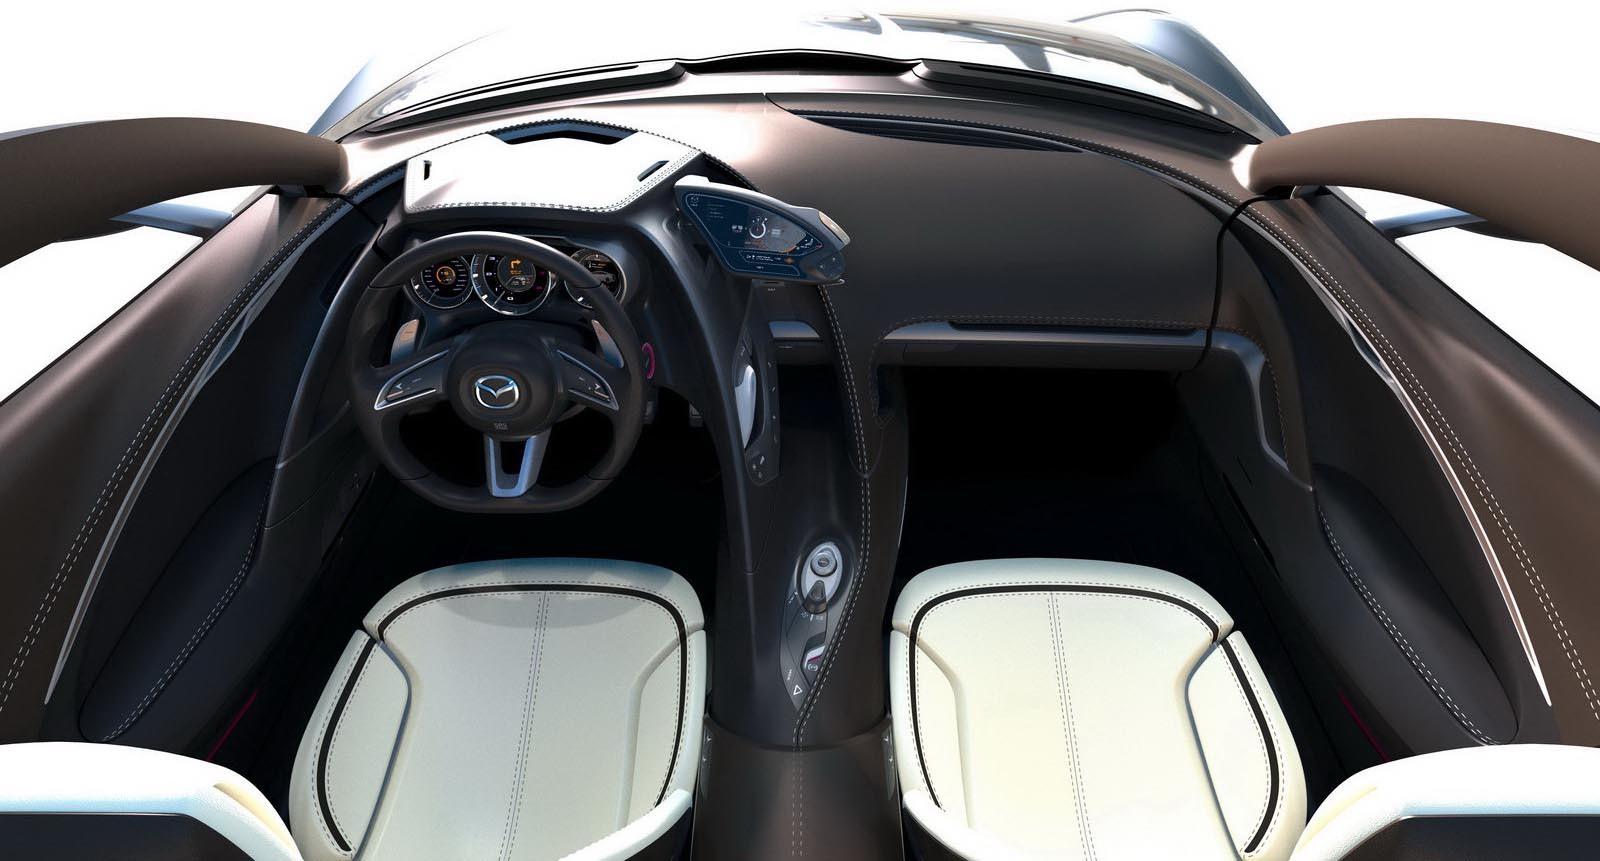 Interiorul lui Mazda Shinari continua ideea exteriorului, dar adopta si multe gadgeturi